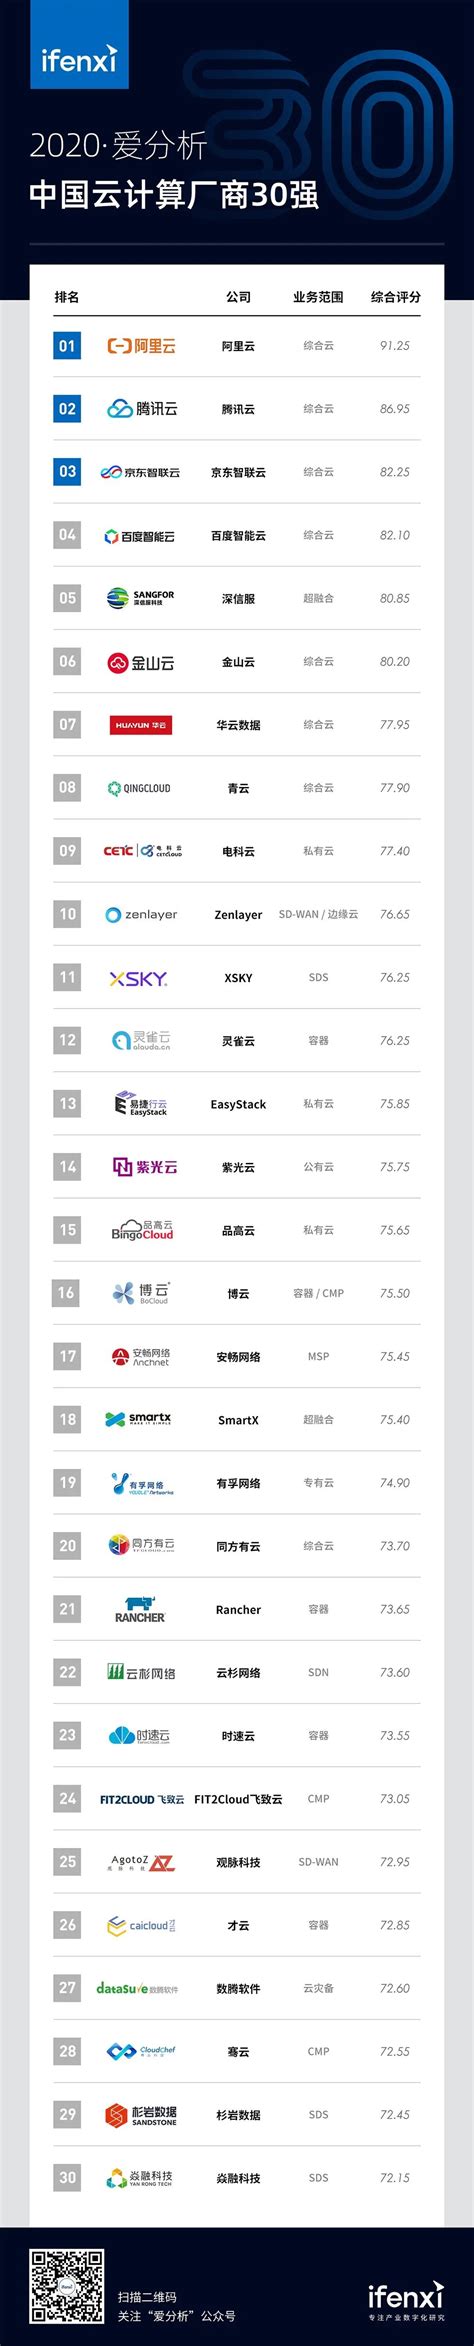 中国云计算厂商TOP30重磅榜单_互联互通社区的博客-CSDN博客